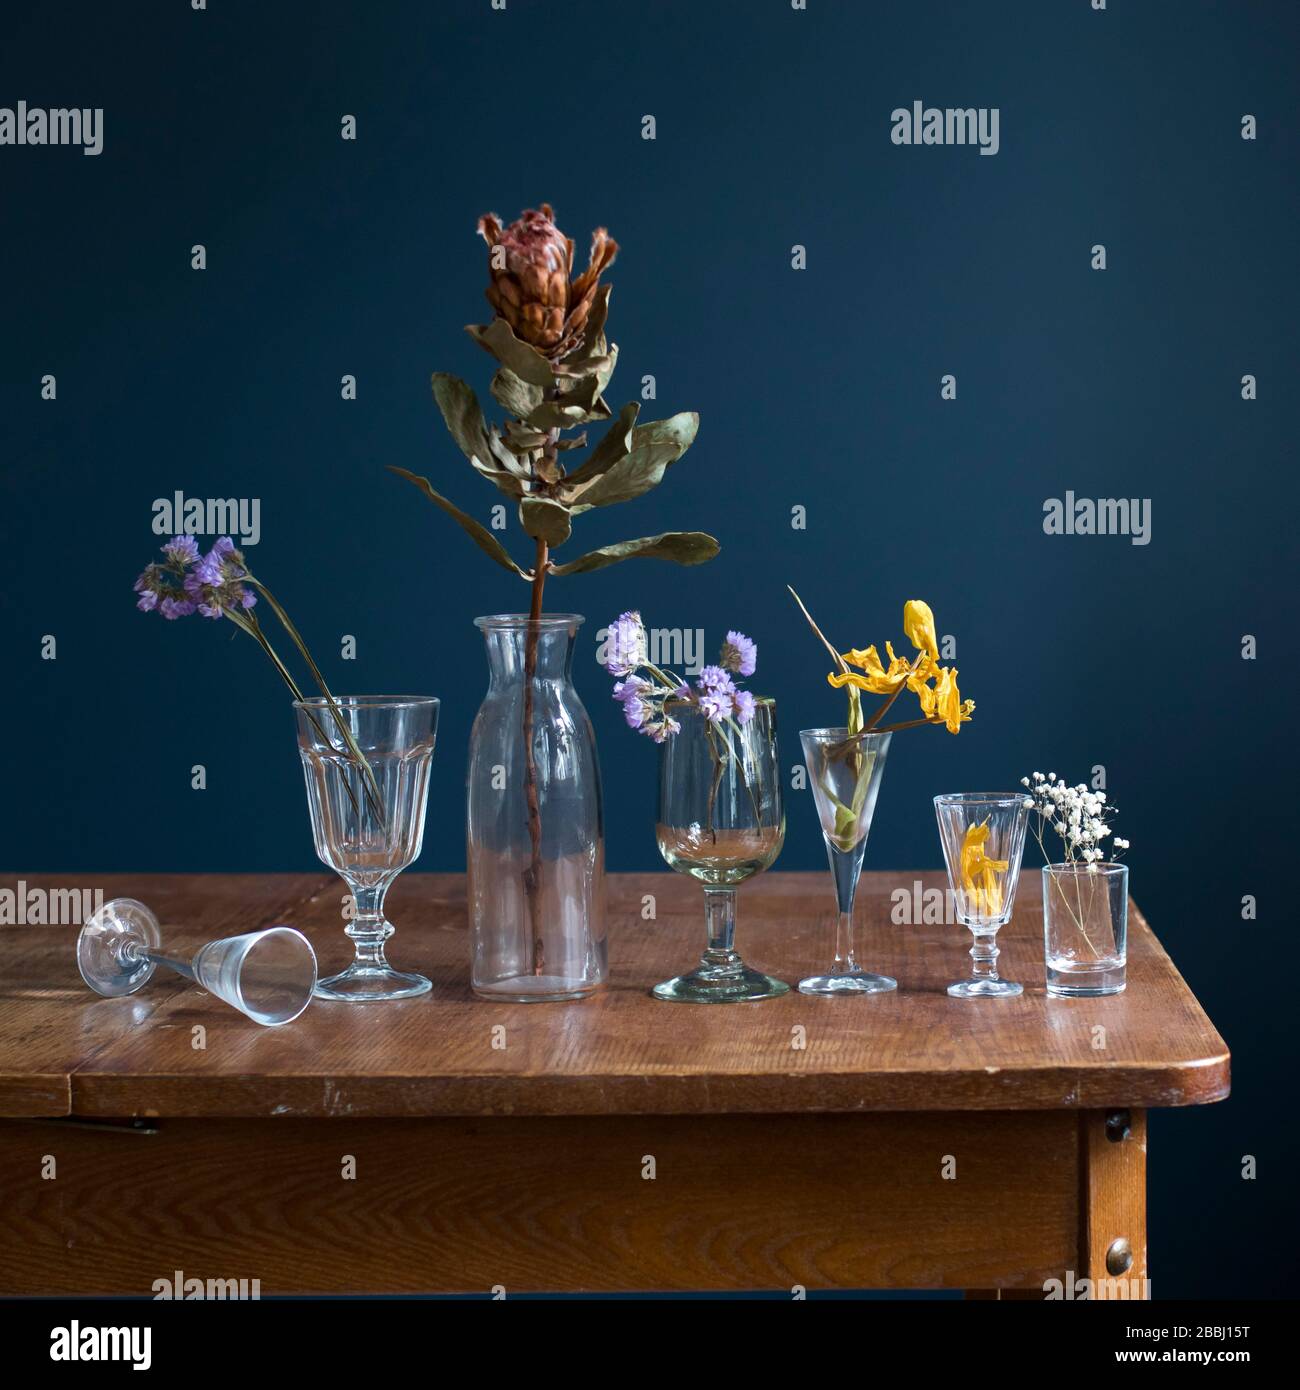 Flores secas en vasos de cristal sobre una mesa de madera frente a una pared azul oscuro. Tarjeta de arte. Diseño. Espacio de copia. Foto de stock